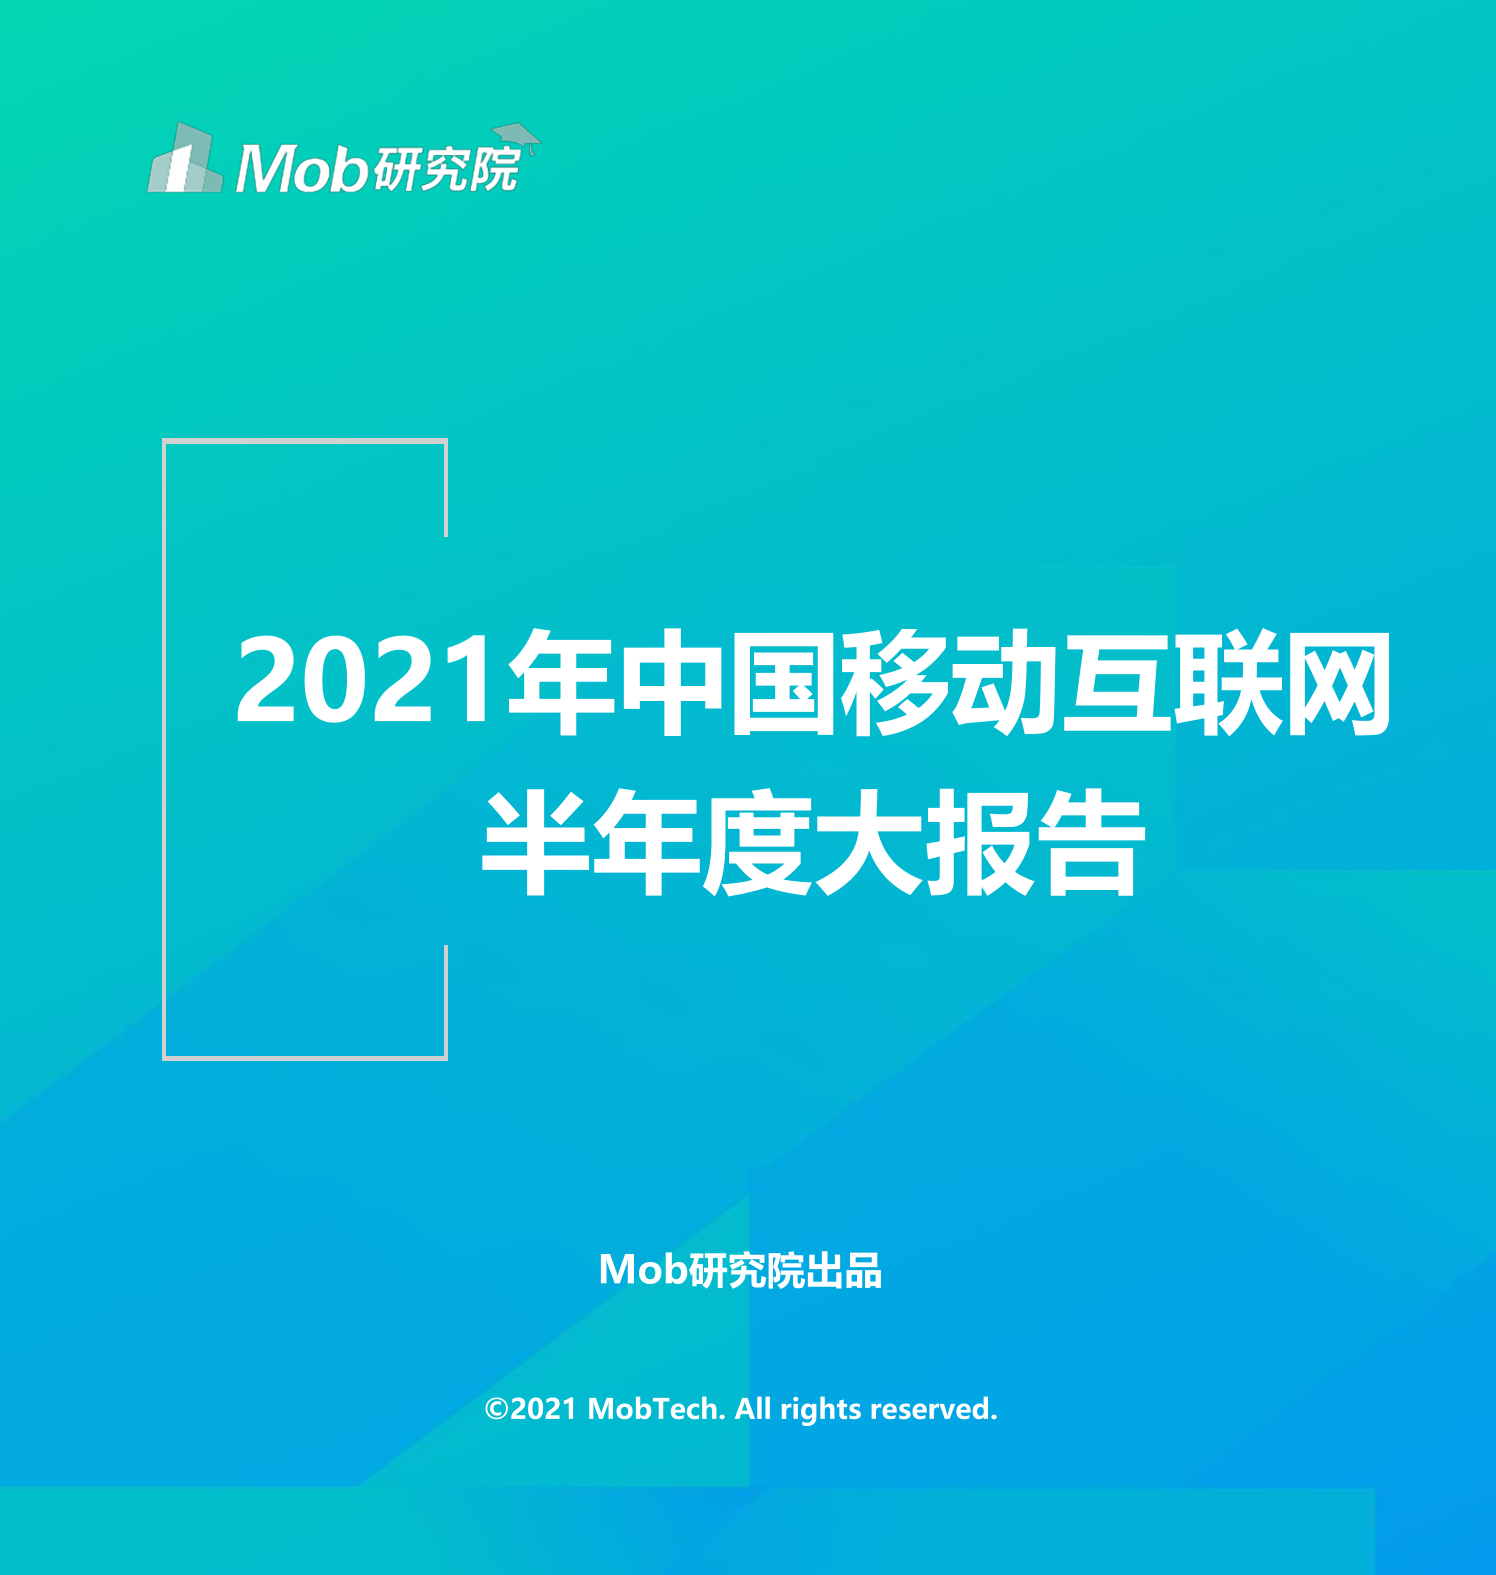 2021年中国移动互联网半年度大报告2021年中国移动互联网半年度大报告_1.png